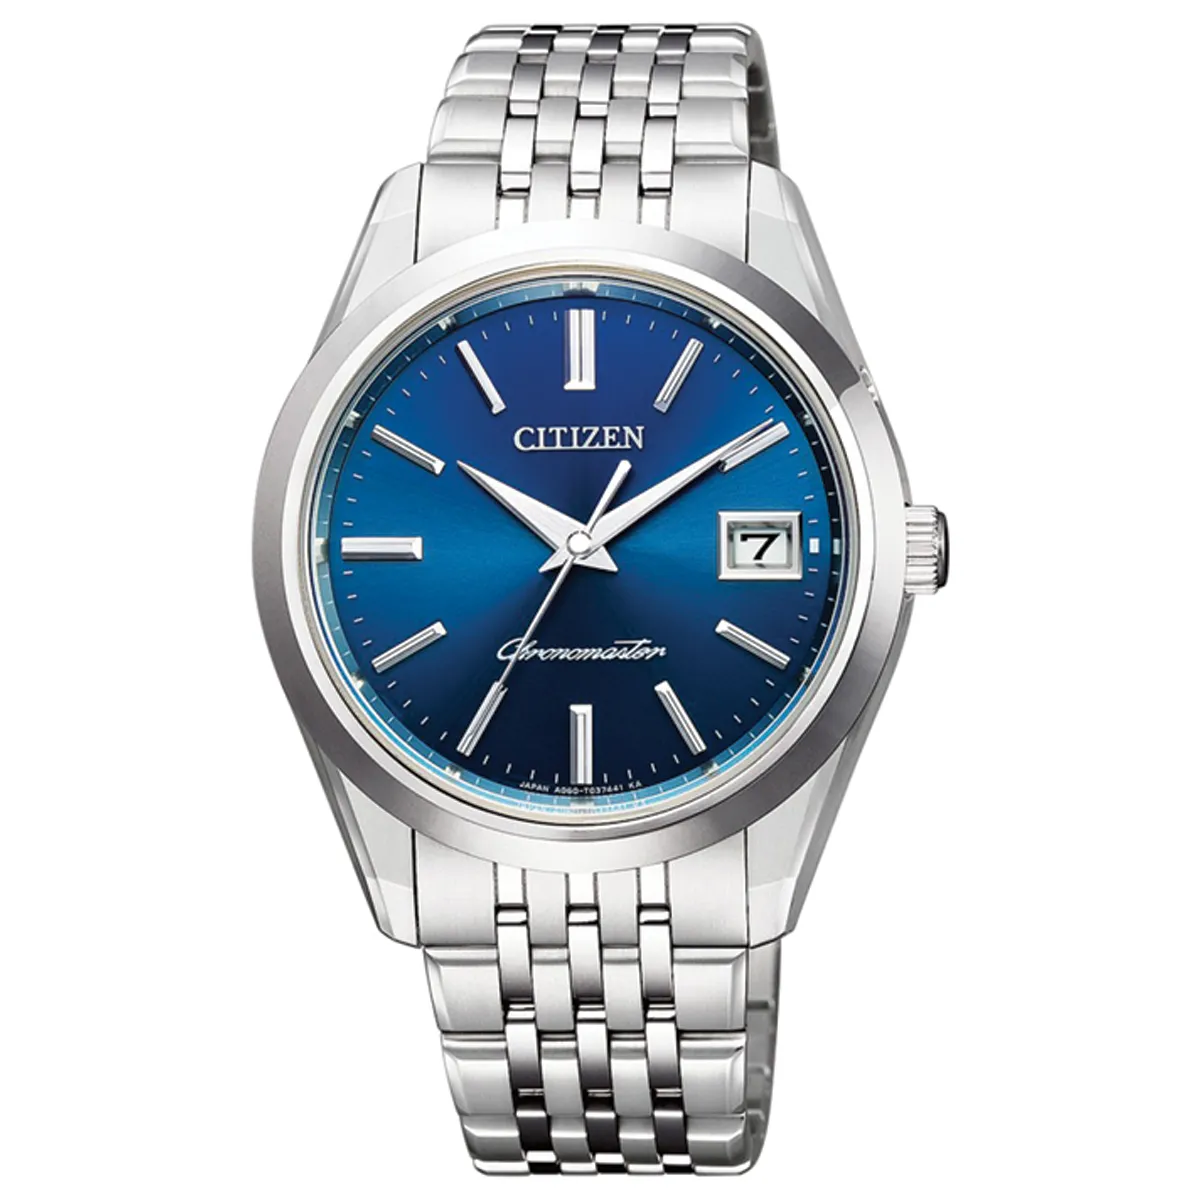 Đồng hồ The Citizen Chronomaster AQ4041-54L mặt số màu xanh. Dây đeo bằng titanium. Thân vỏ bằng titanium.